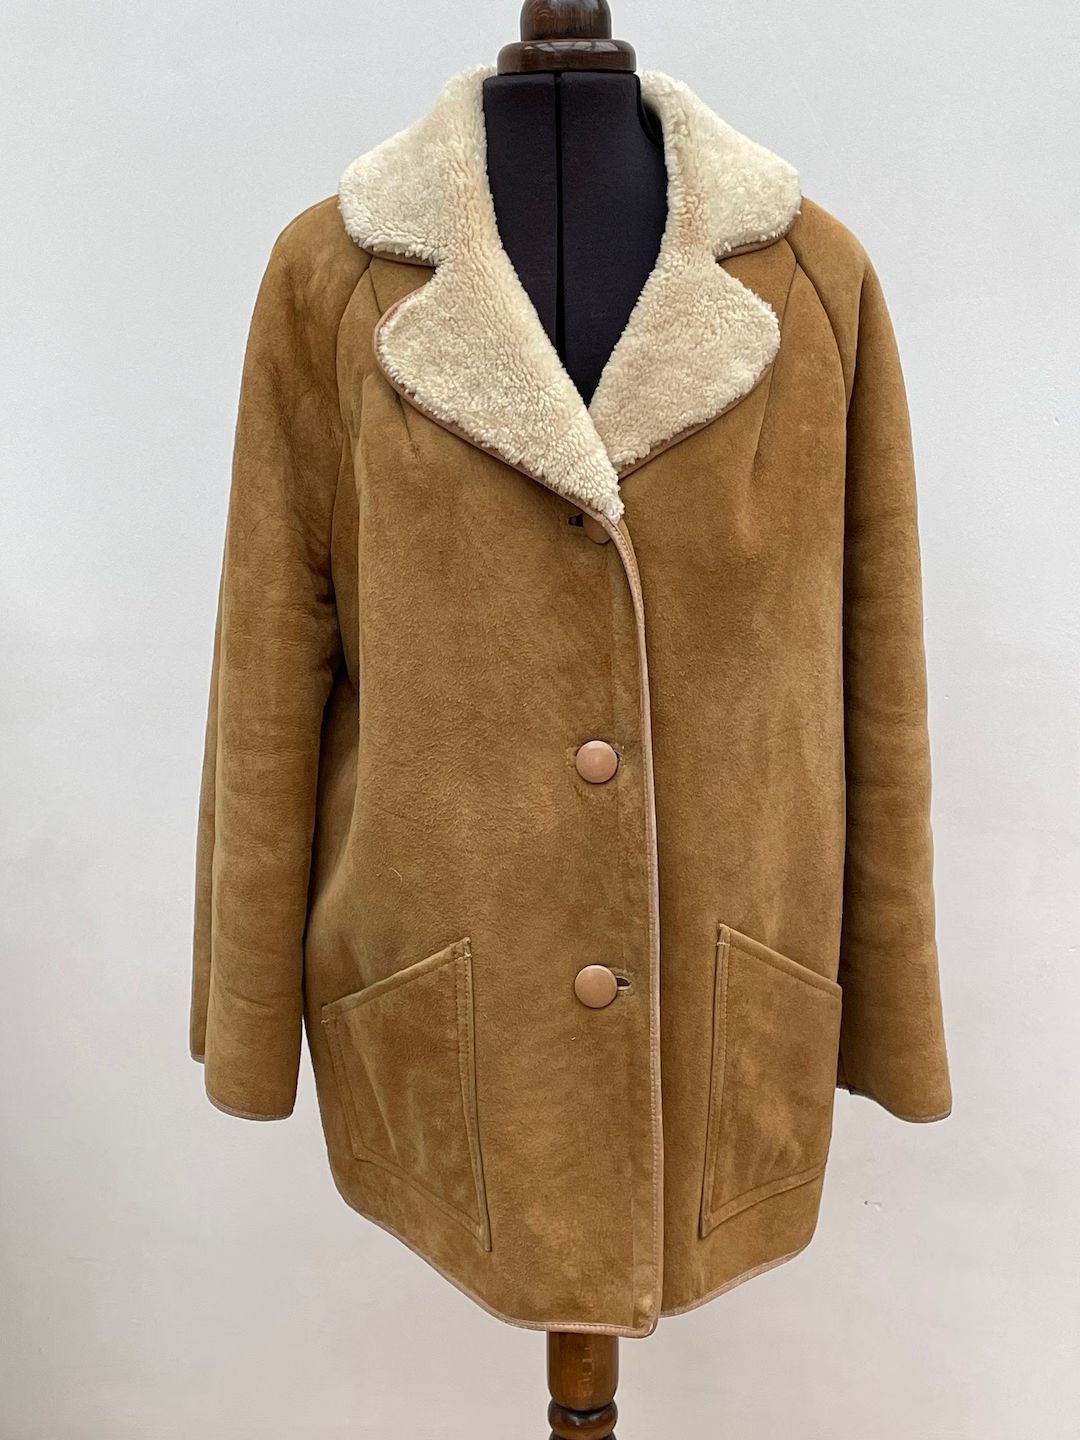 Vintage Morlands Womens Tan Honey Lambskin Sheepskin Shearling Car Coat Jacket Large - Etsy UK | Etsy (UK)